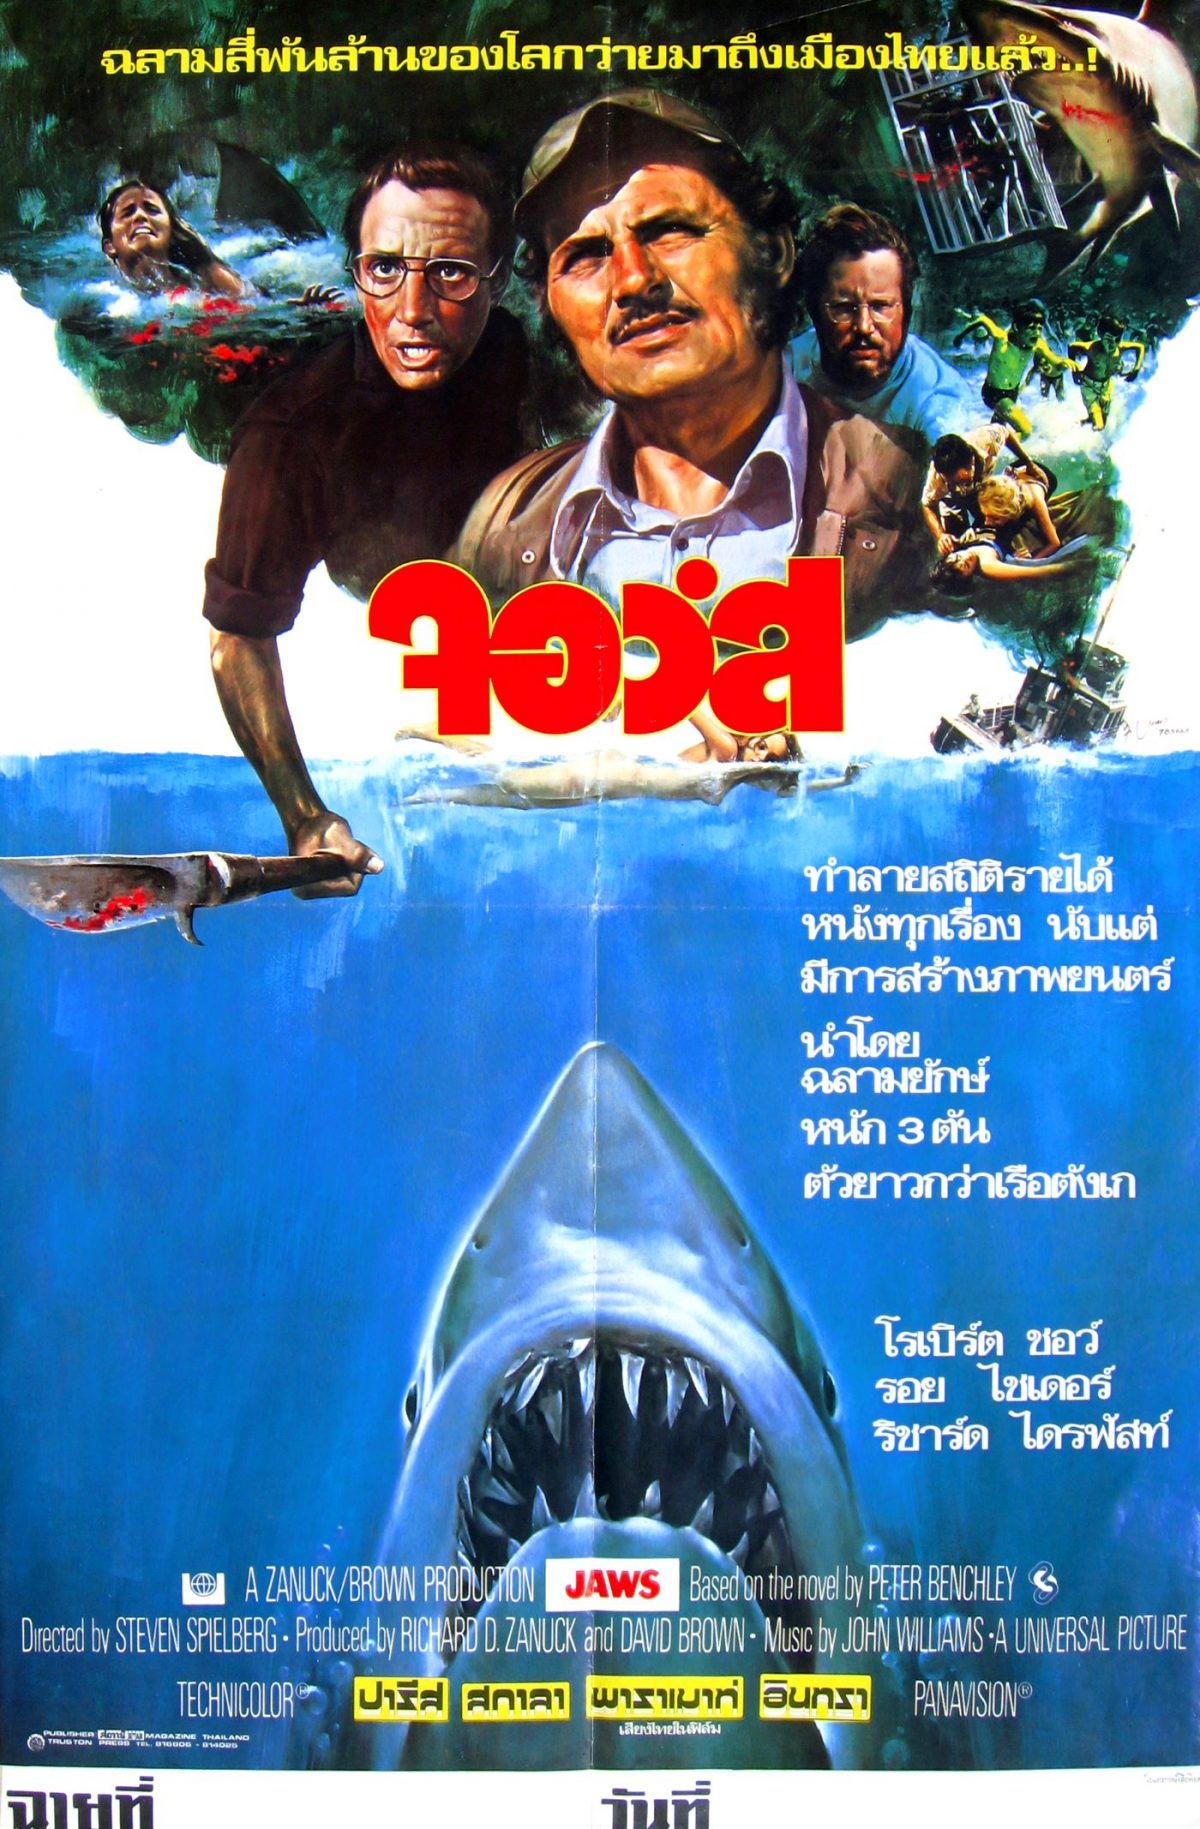 Thailand, movie posters, artwork, Jaws, Robert Shaw, Stephen Spielberg